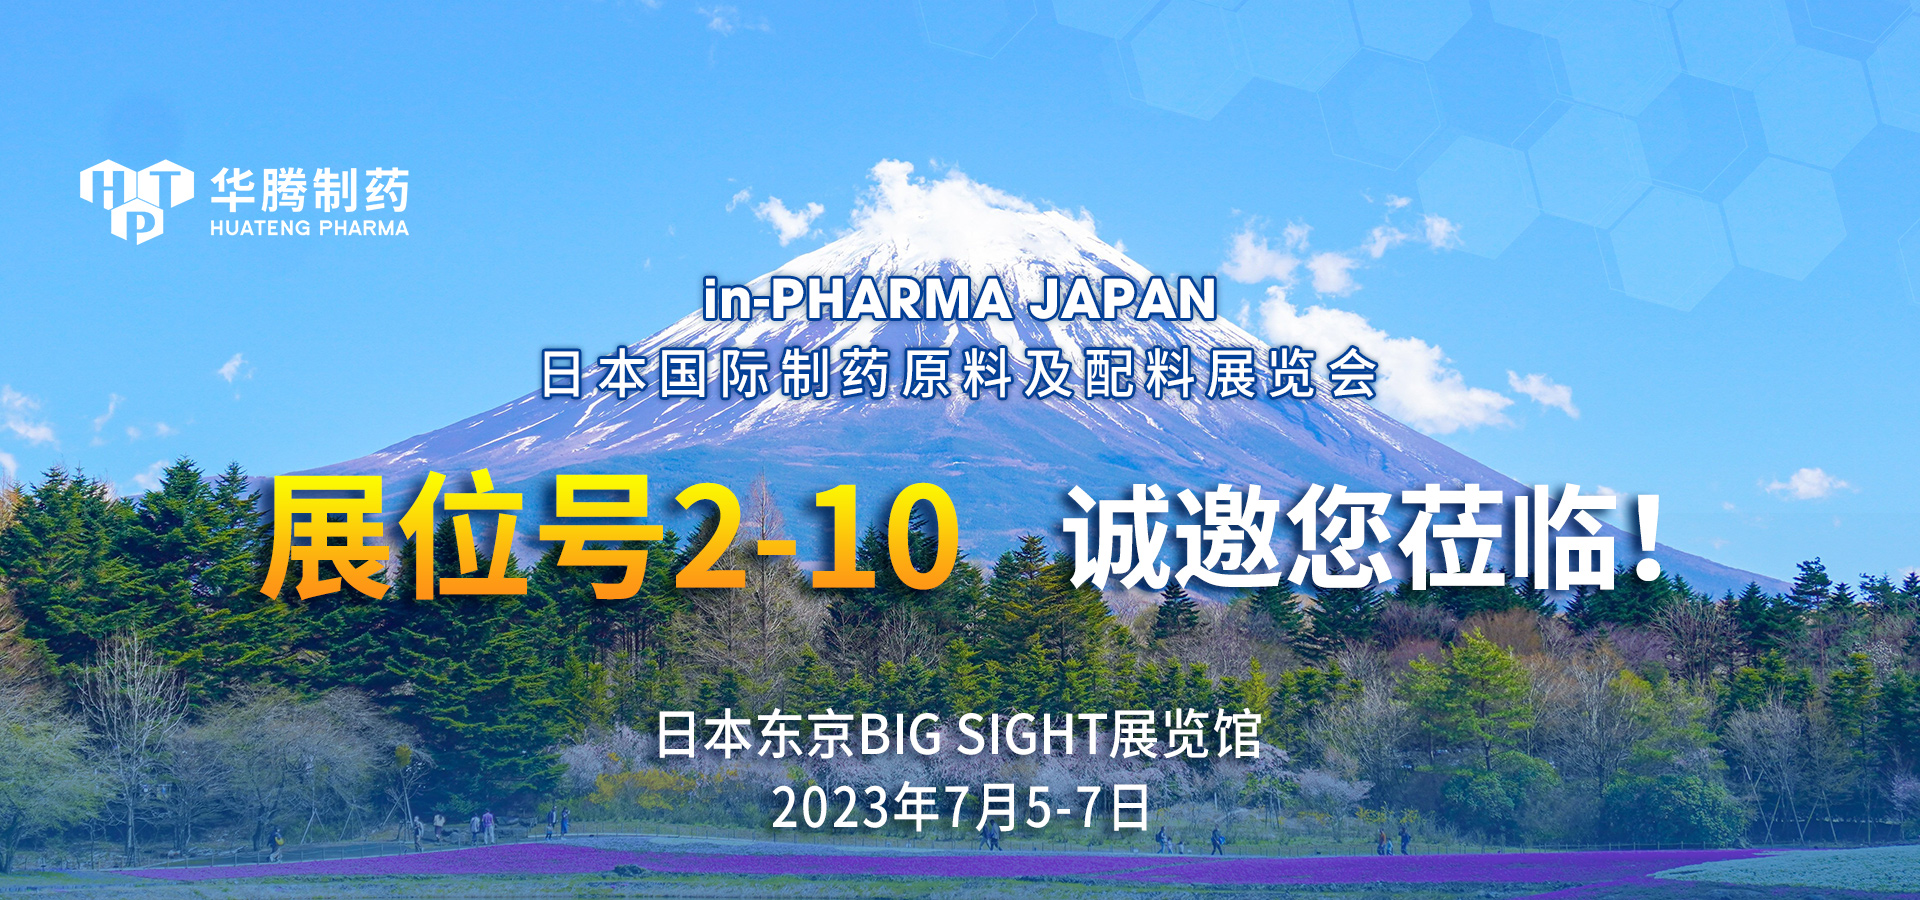 【展会邀约】新普京集团网站邀您相聚in-PHARMA JAPAN